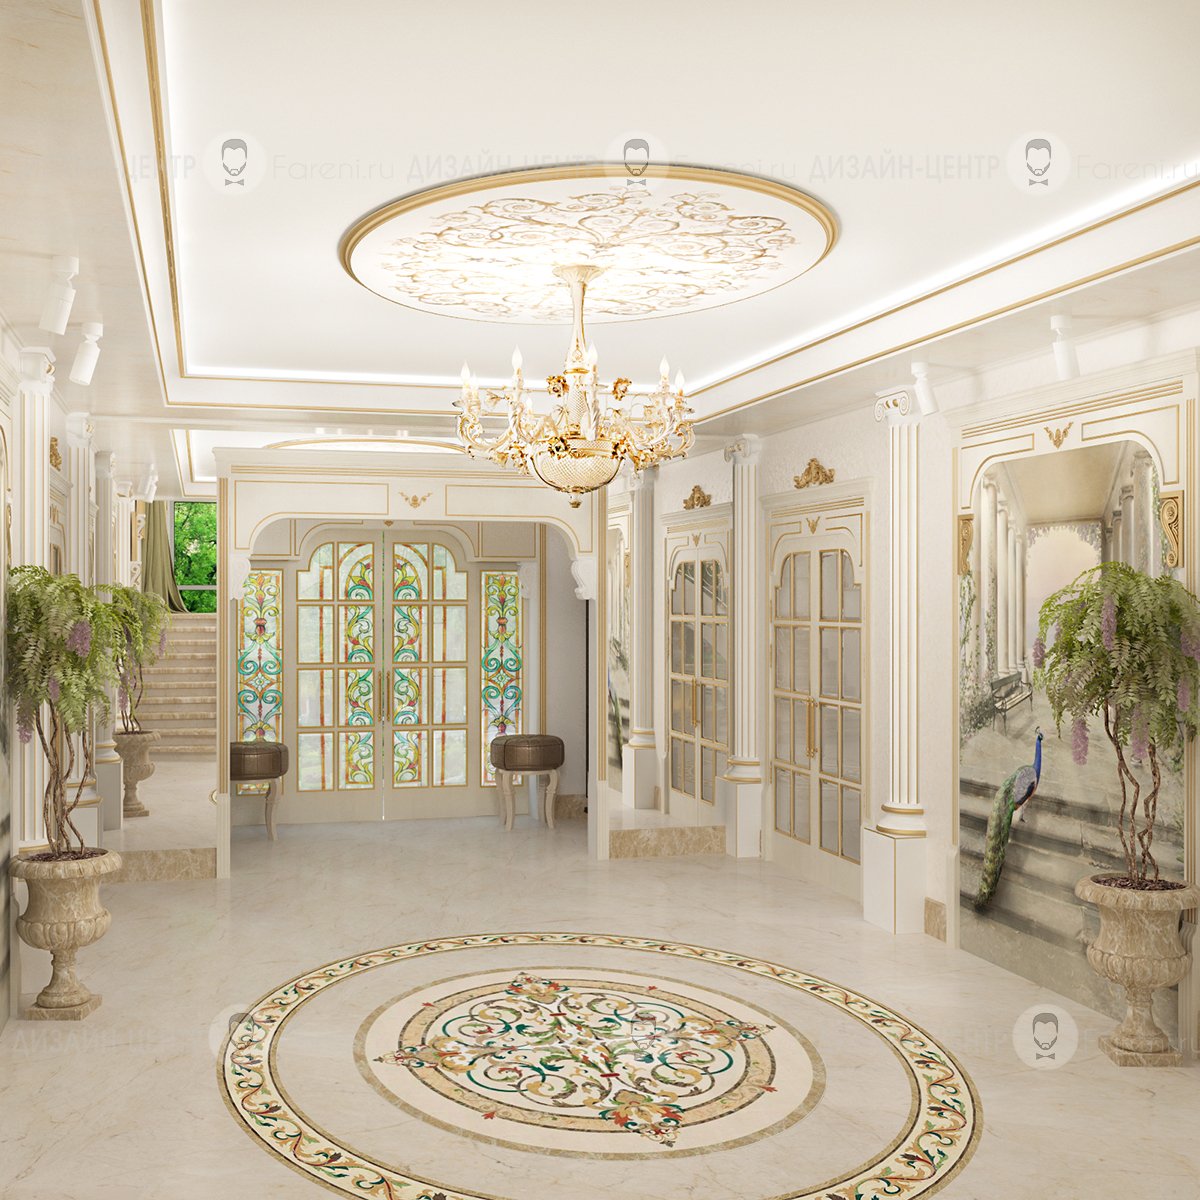 Жен хол. Antonovich Design коридор. Холл в доме. Интерьер холла. Фойе в классическом стиле.